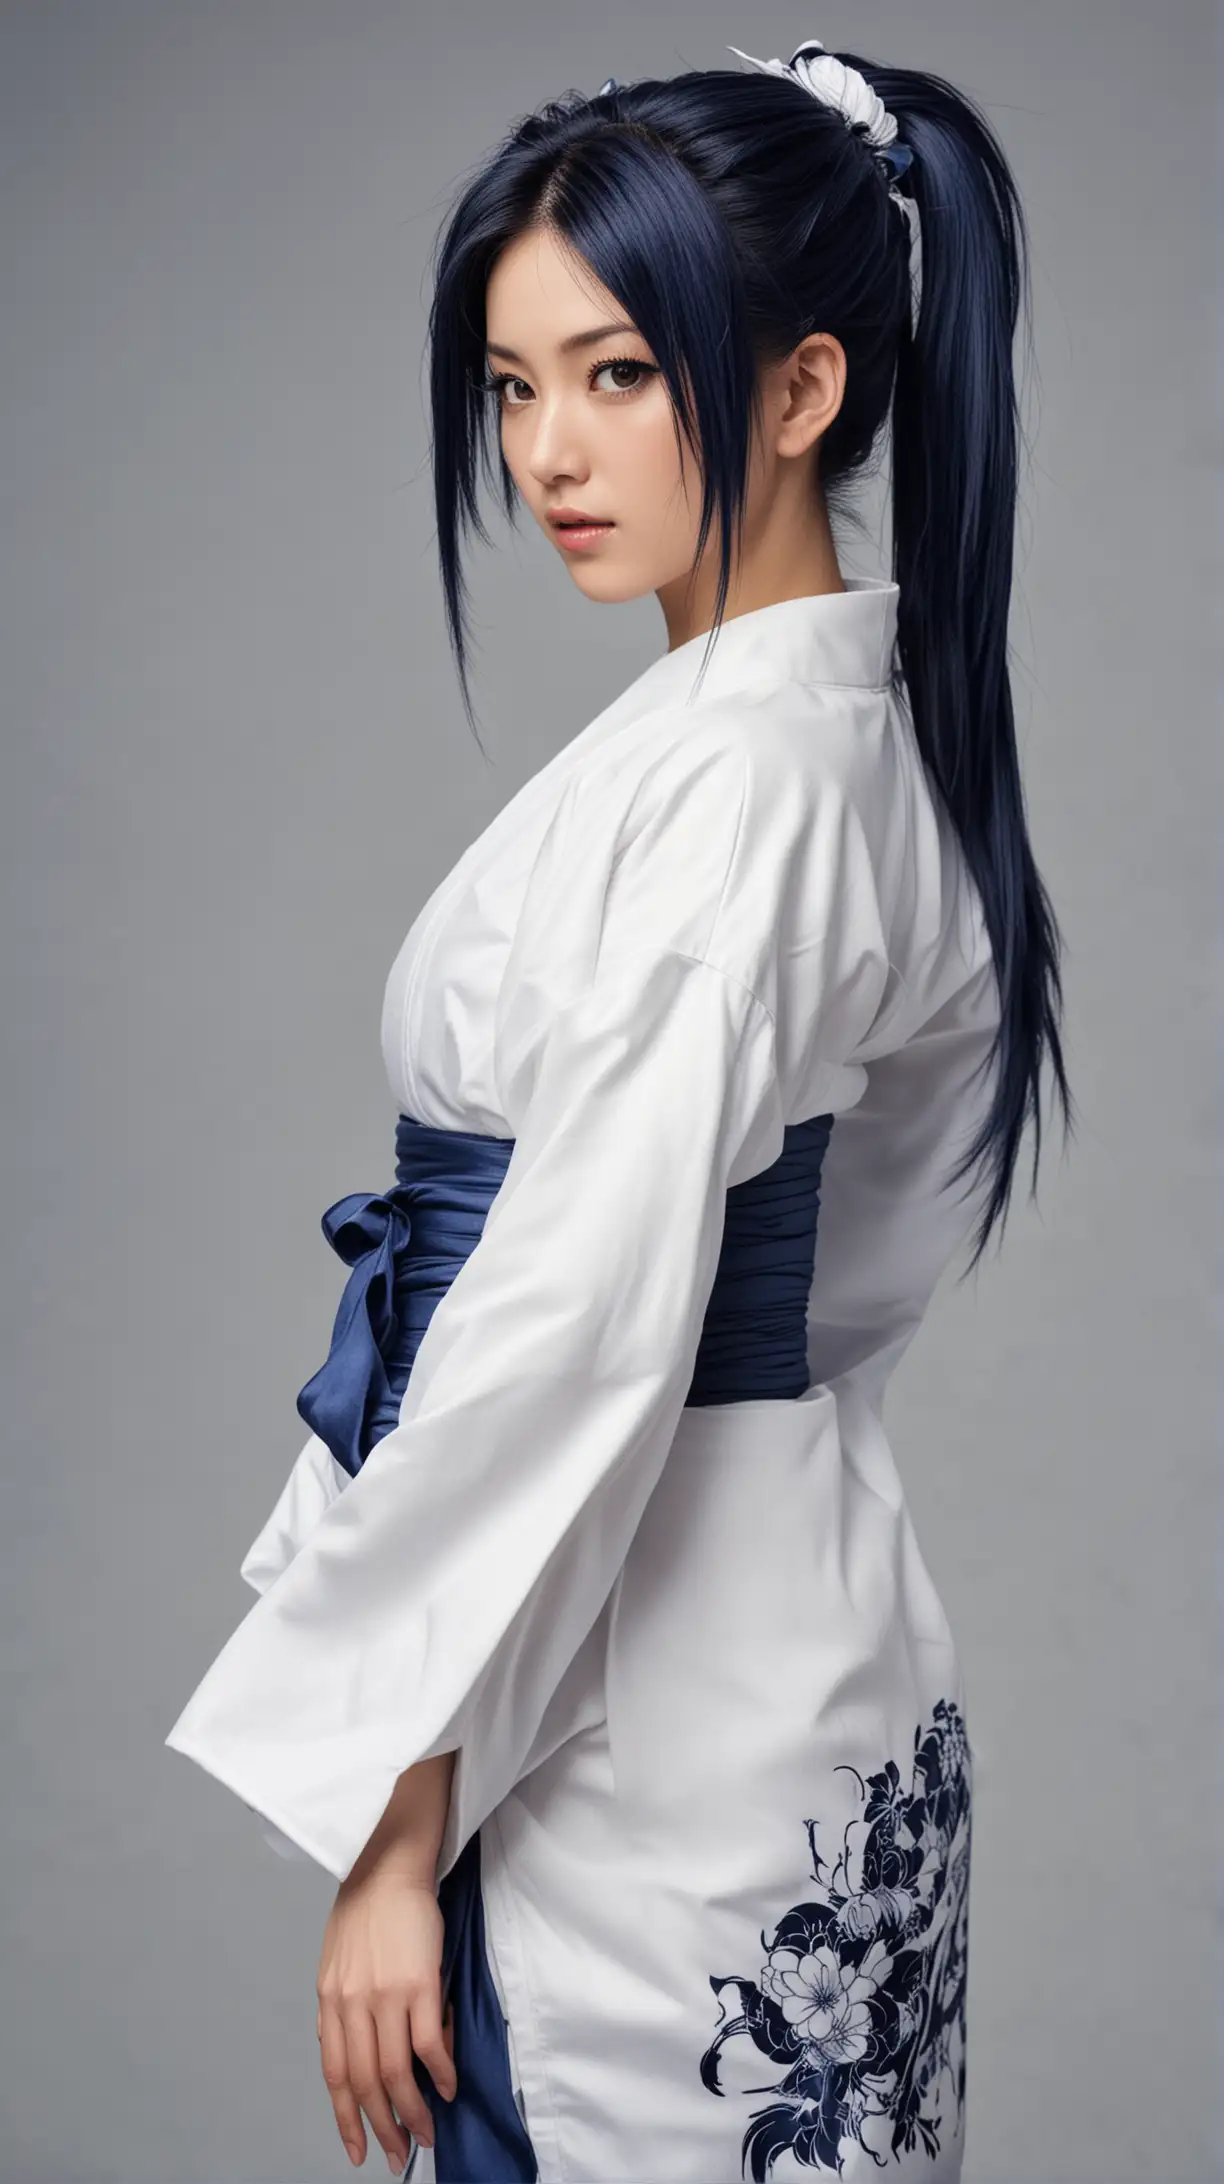 Japanese Female Fighter in Navy Blue Kimono Dress